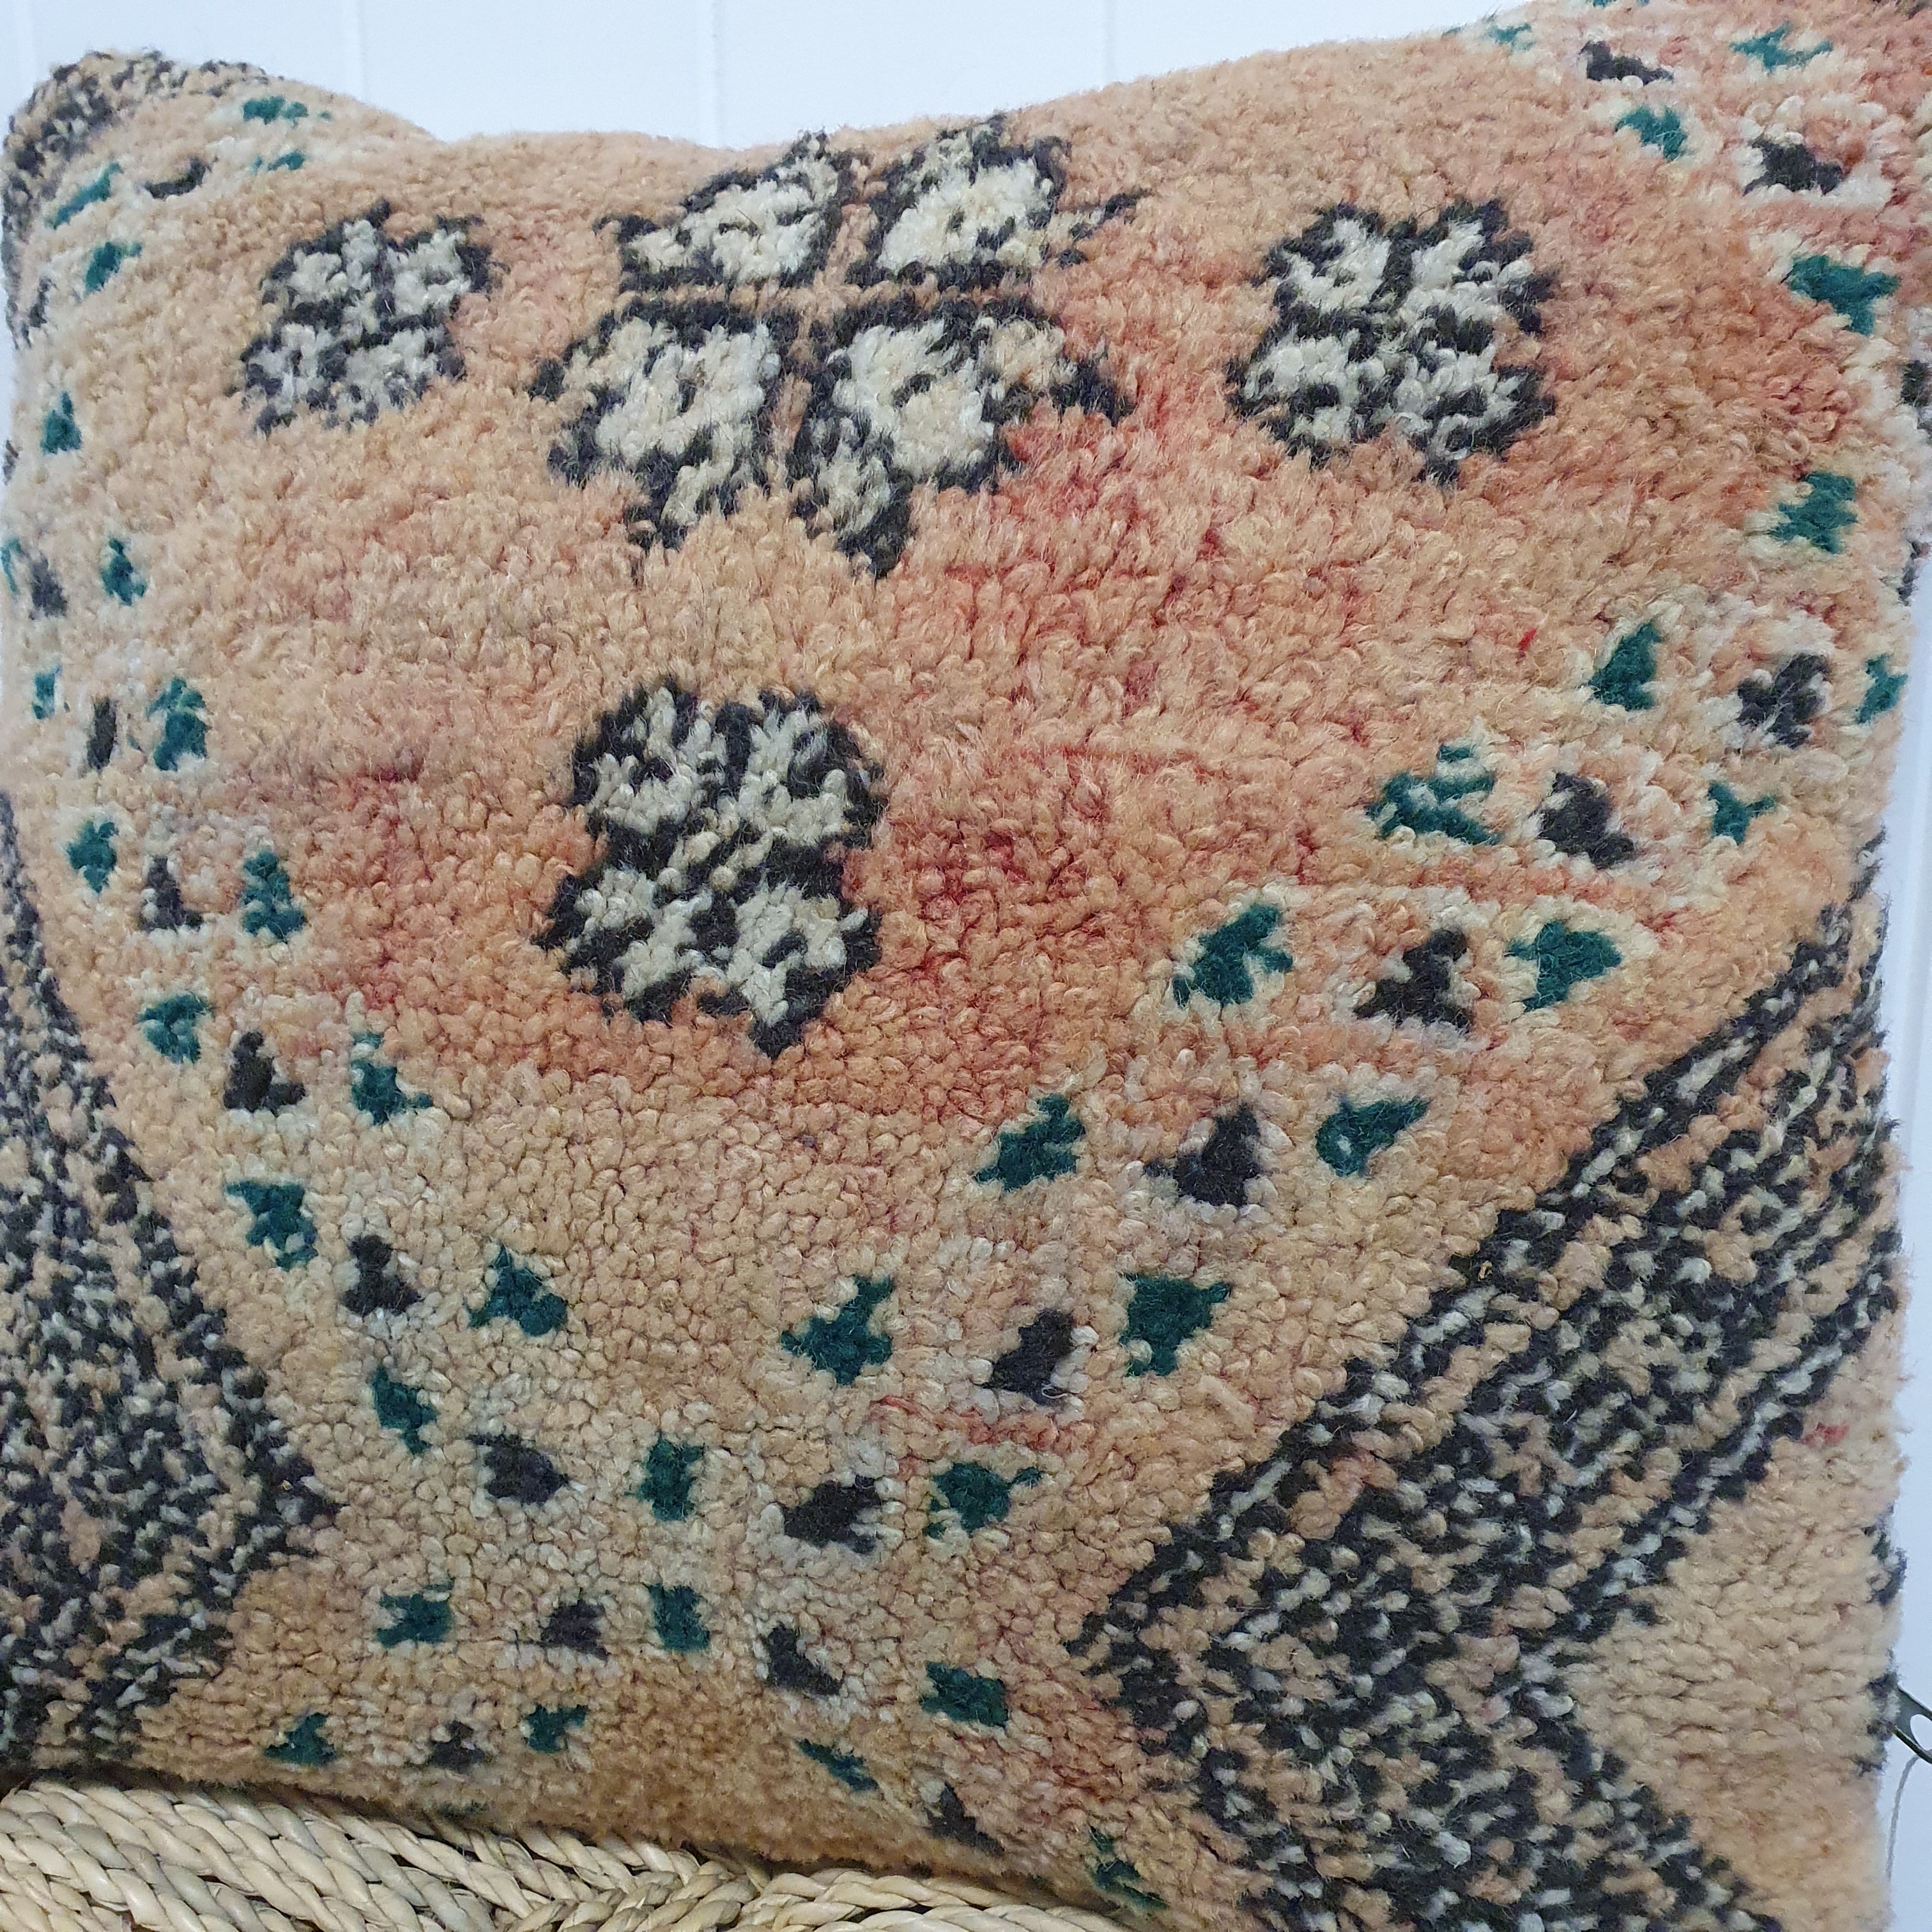 Vintage Boujaad Cushion